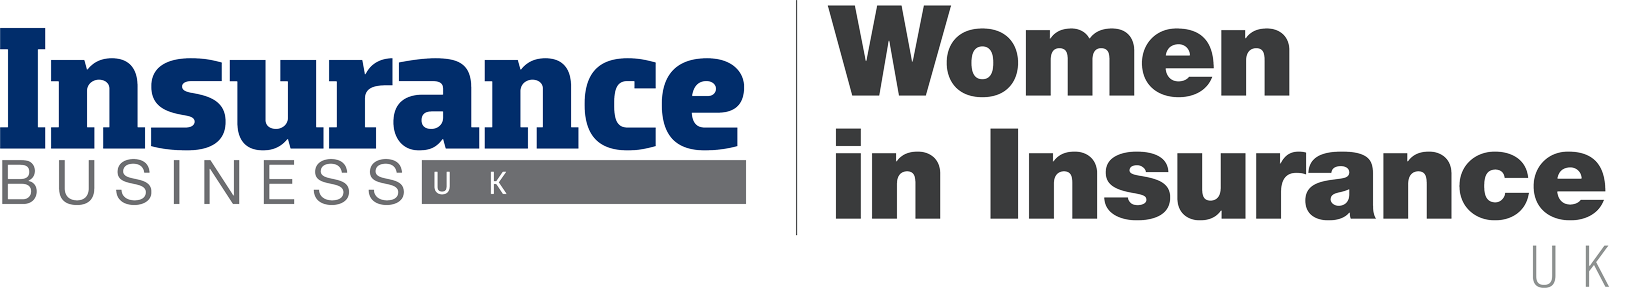 Women in Insurance UK Logo